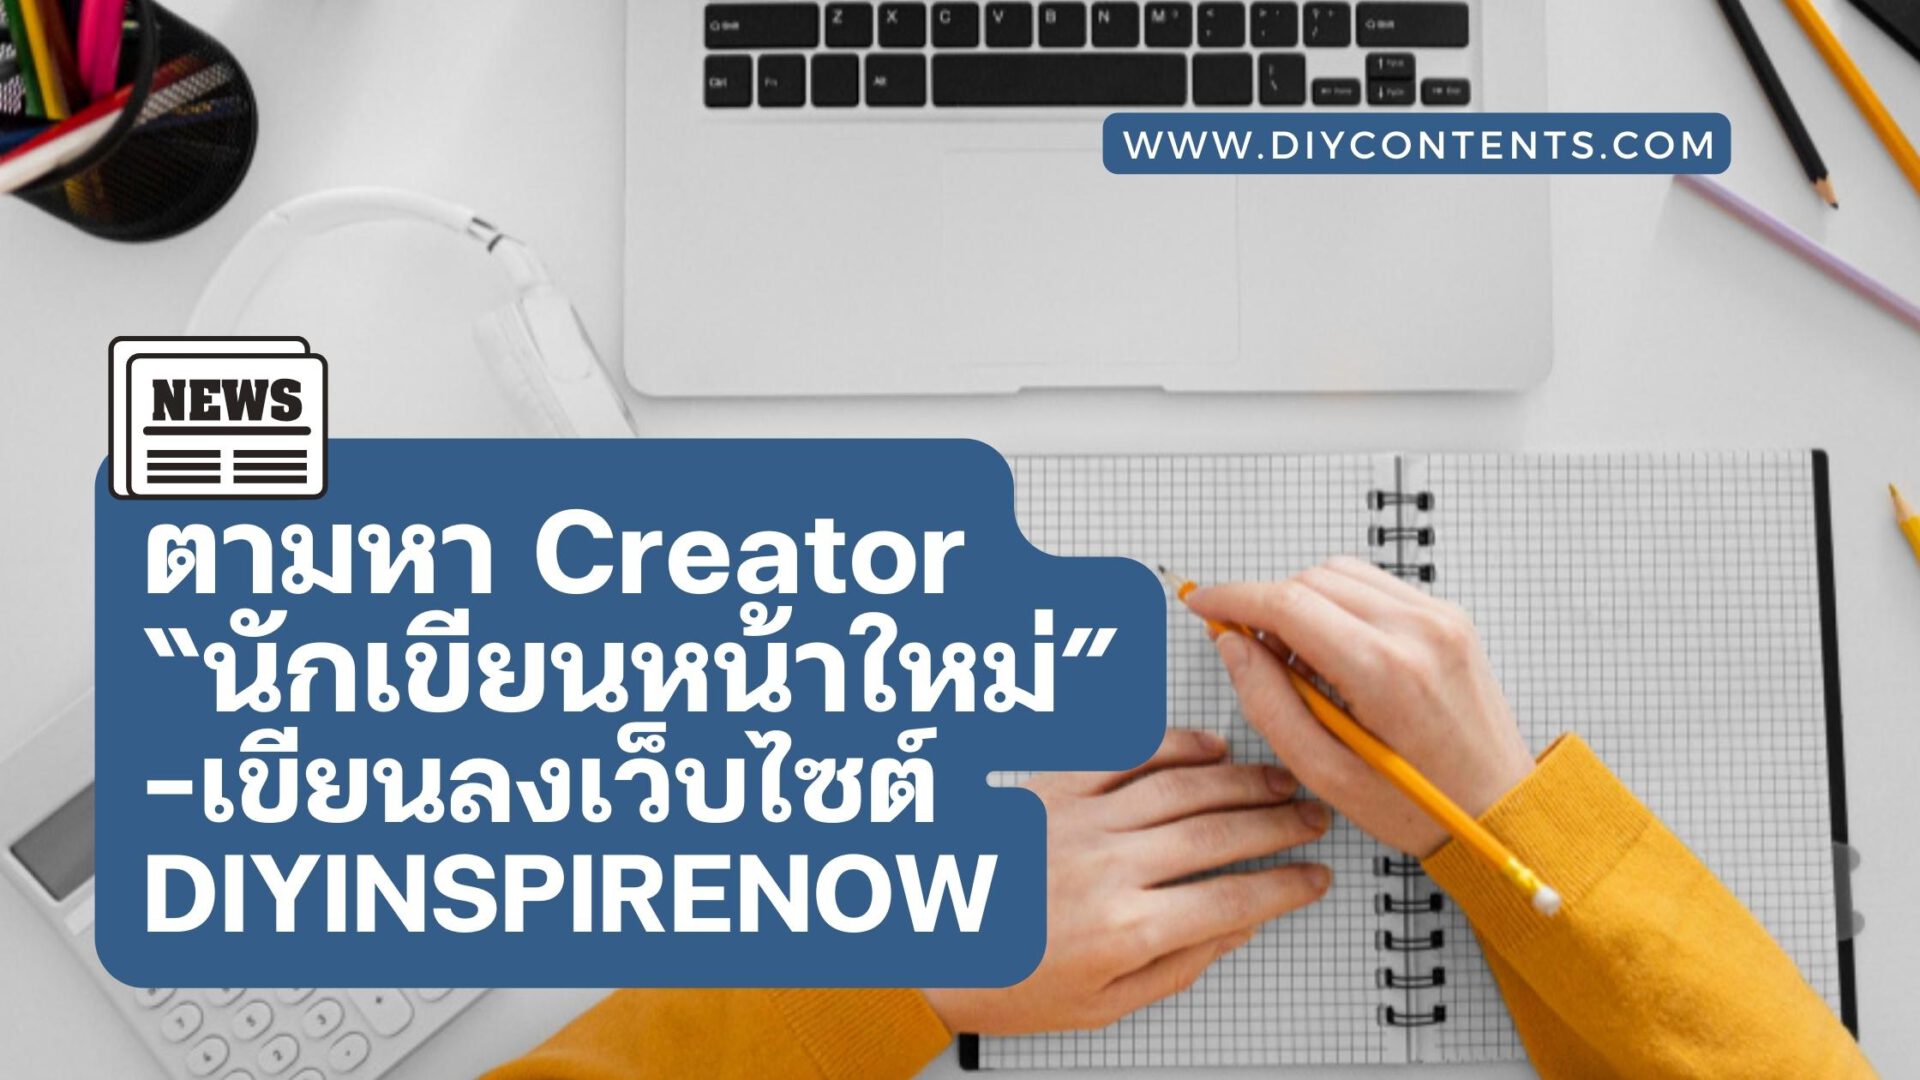 รับสมัครนักเขียน : ตามหา Creator เพื่อเป็น “นักเขียนหน้าใหม่” ใน DIYINSPIRENOW